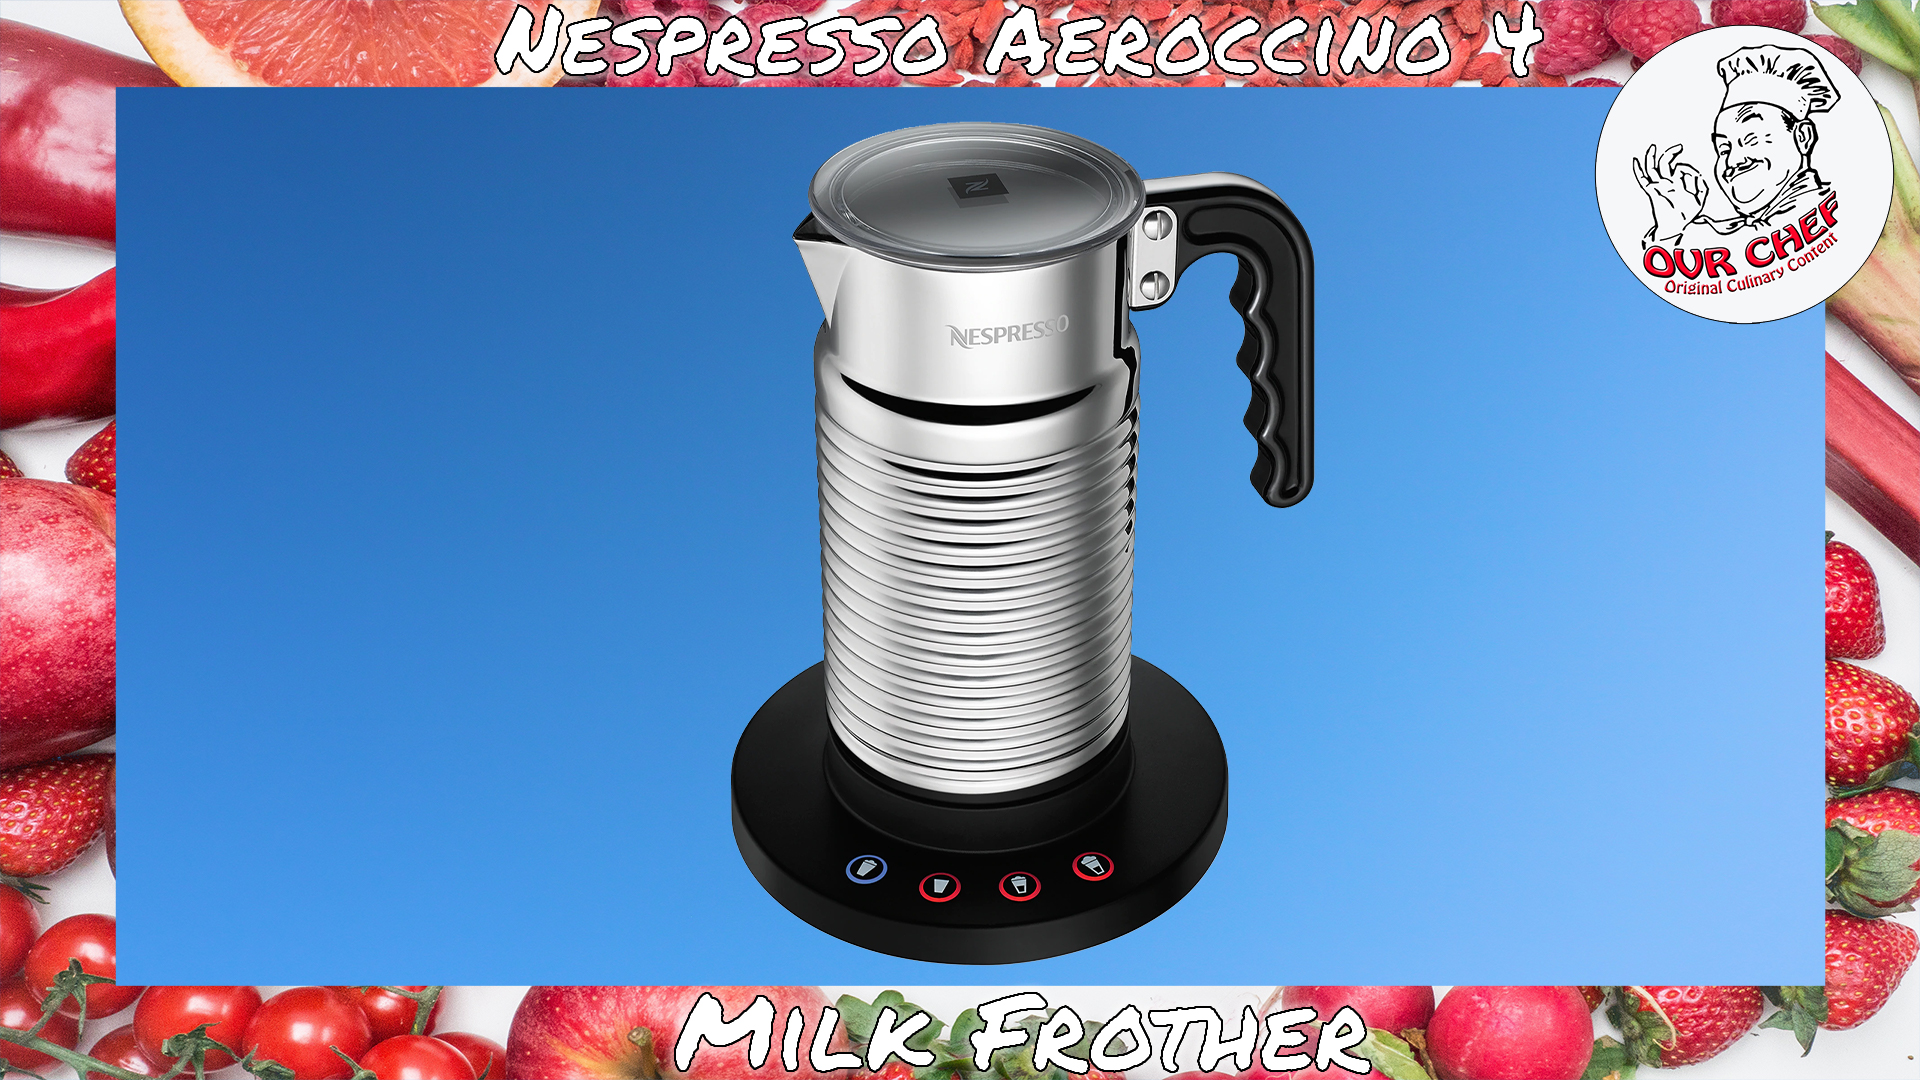 Portier vat Regenachtig Nespresso Aeroccino 4 Milk Frother (Review) - Original Video Reviews